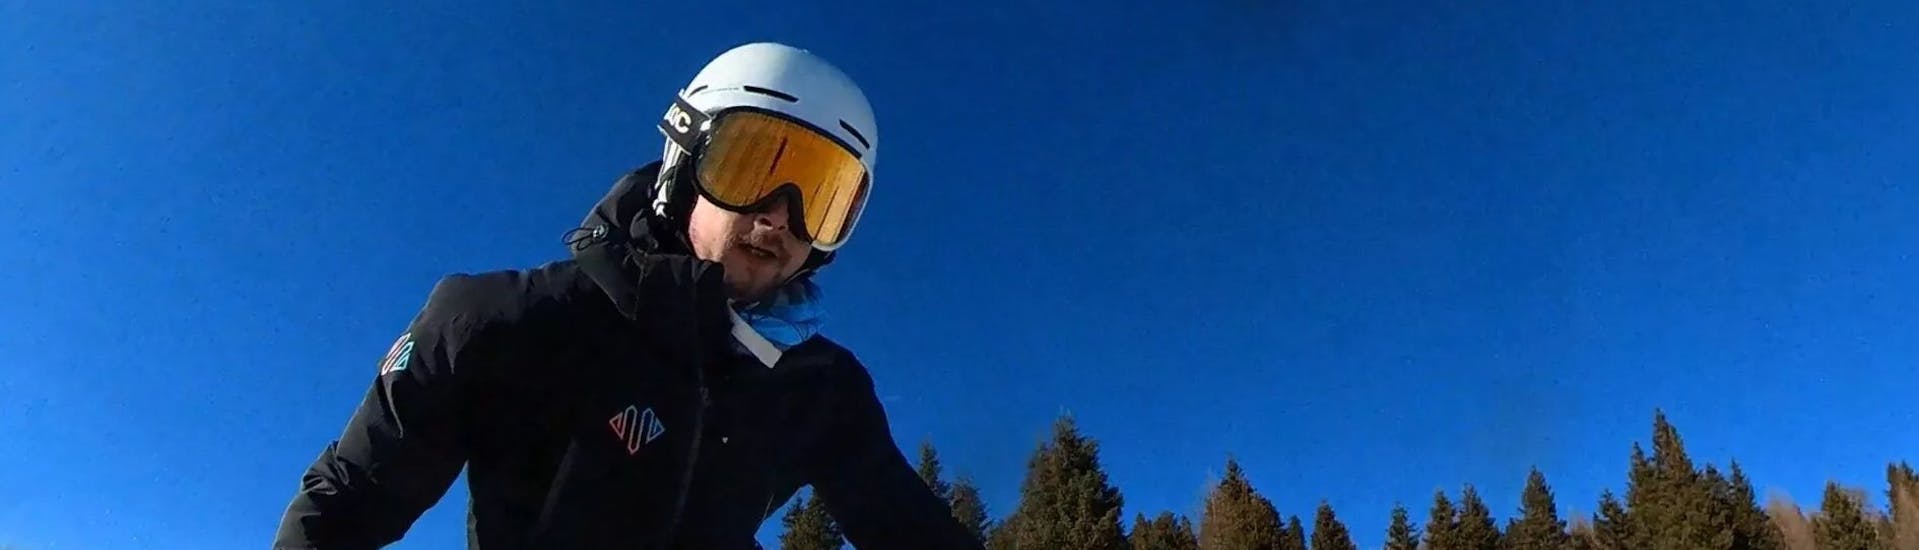 Skilessen voor volwassenen vanaf 16 jaar - ervaren.